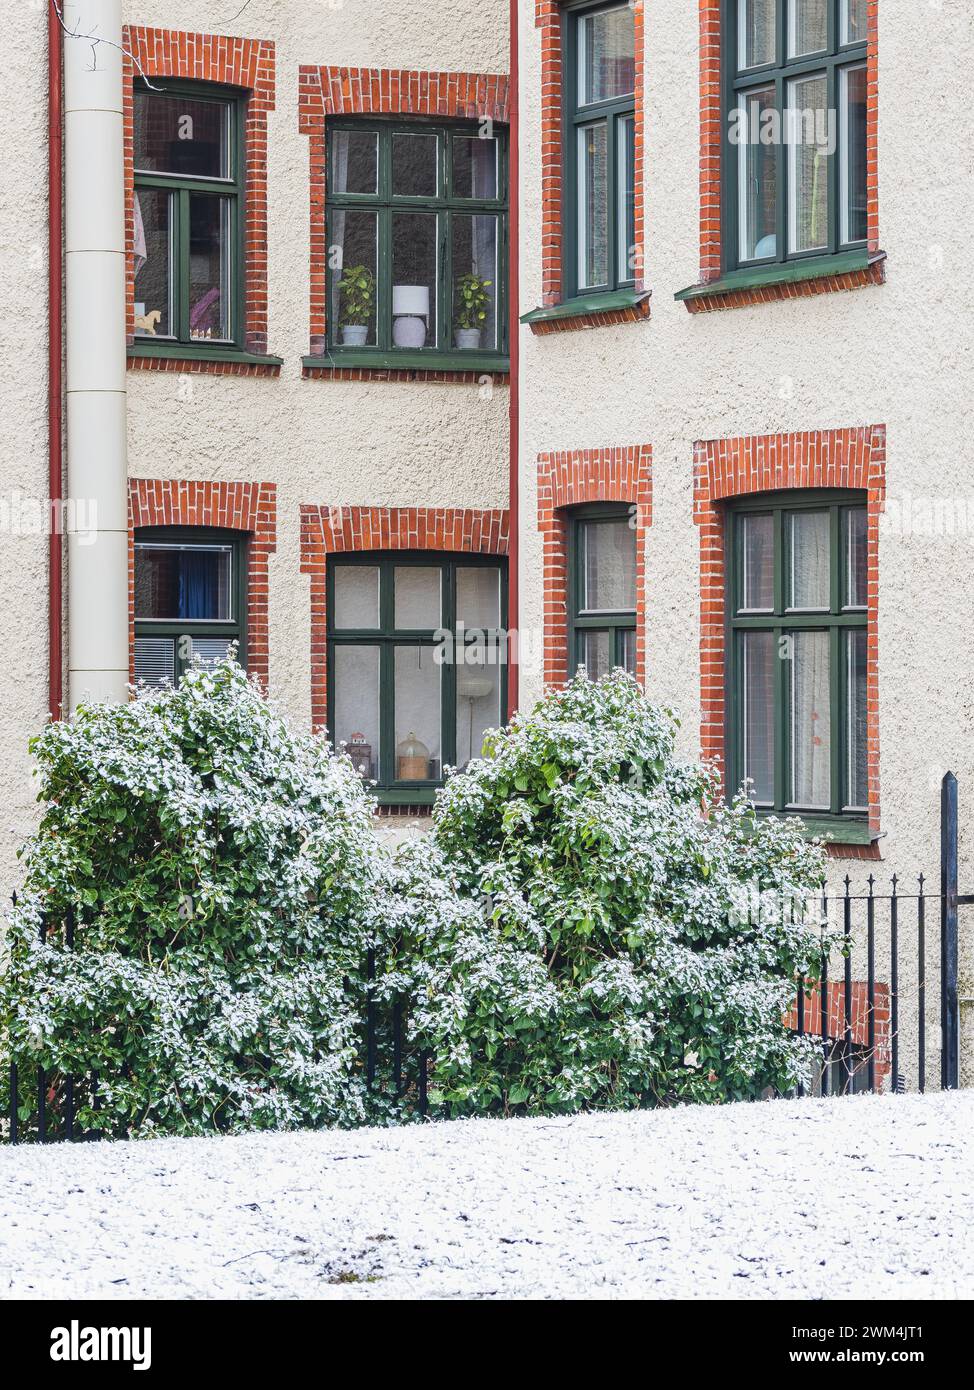 La neige fraîche recouvre légèrement les arbustes verts situés en face d'un immeuble classique avec des fenêtres distinctives et des détails en brique à Gothenbur Banque D'Images